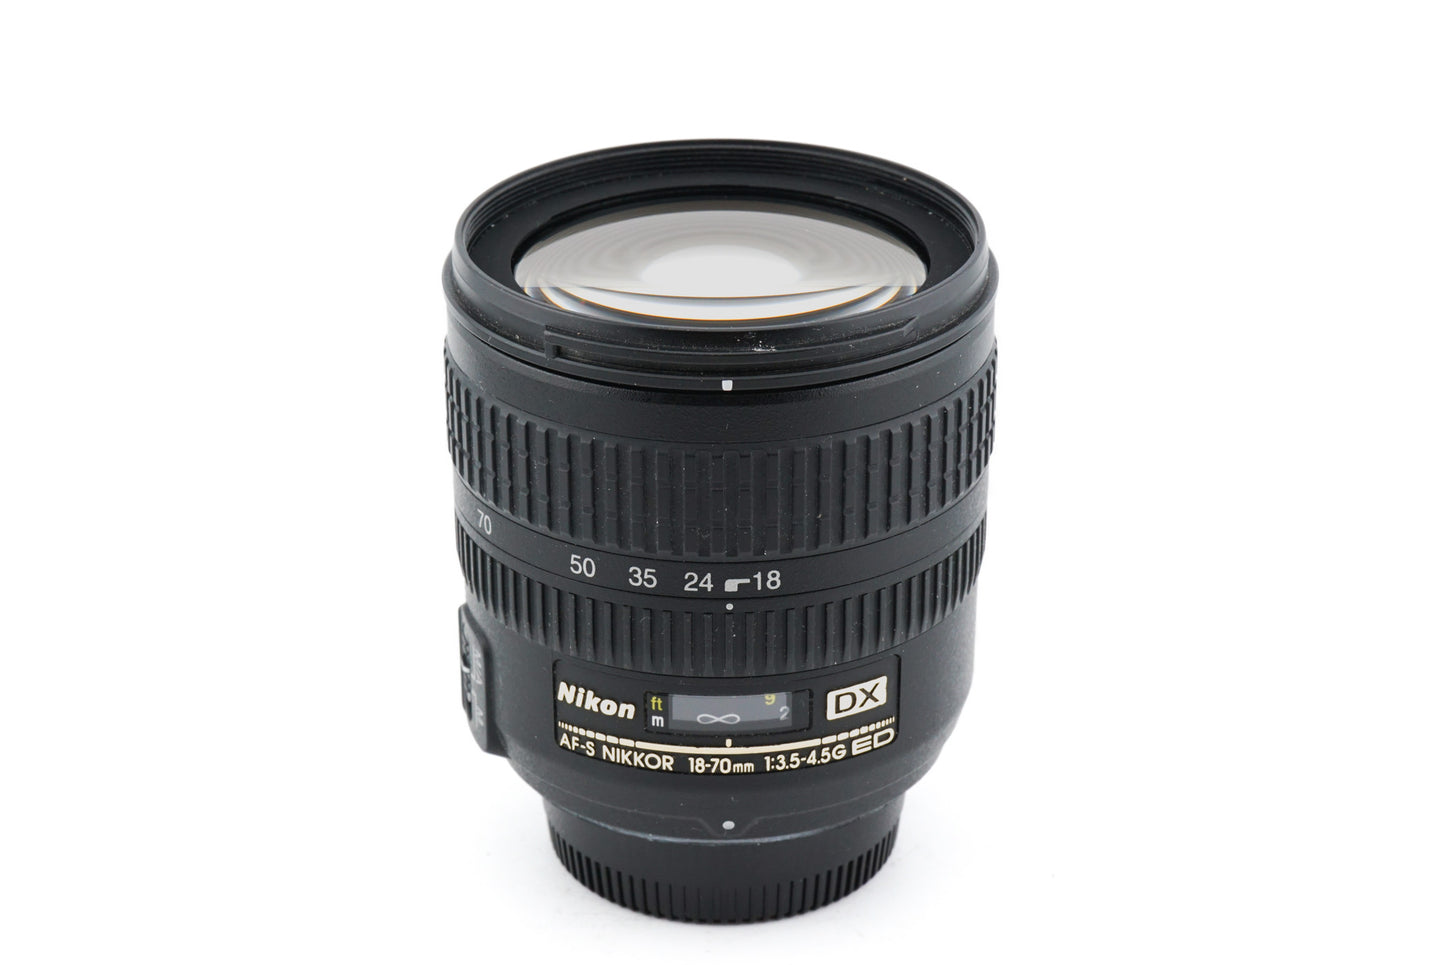 Nikon 18-70mm f3.5-4.5 G ED AF-S Nikkor - Lens